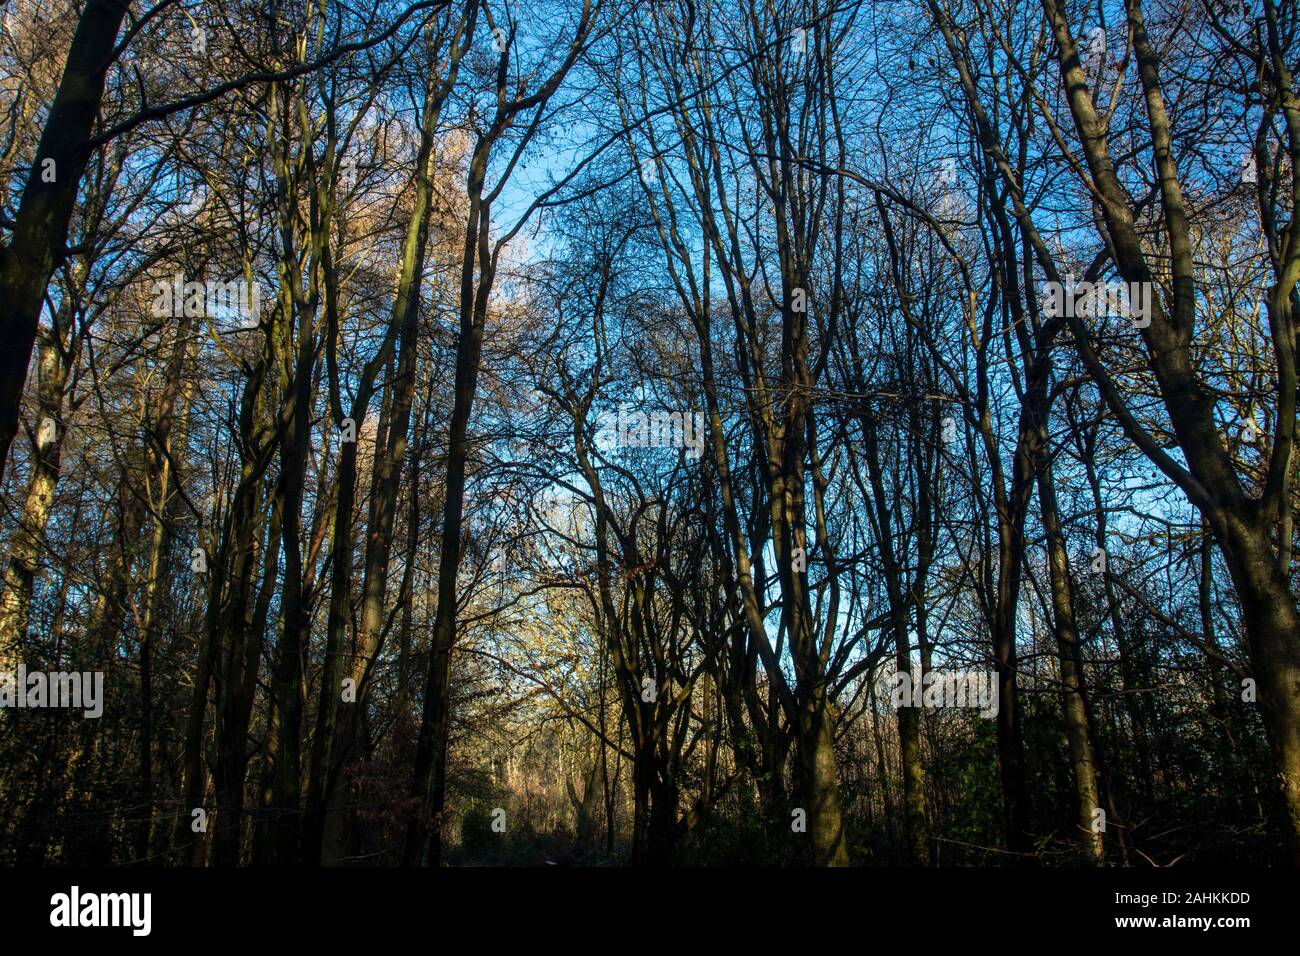 Woodland invernale con cielo blu che si affaccia attraverso gli alberi scheletrici, ritratto naturale ambientale Foto Stock